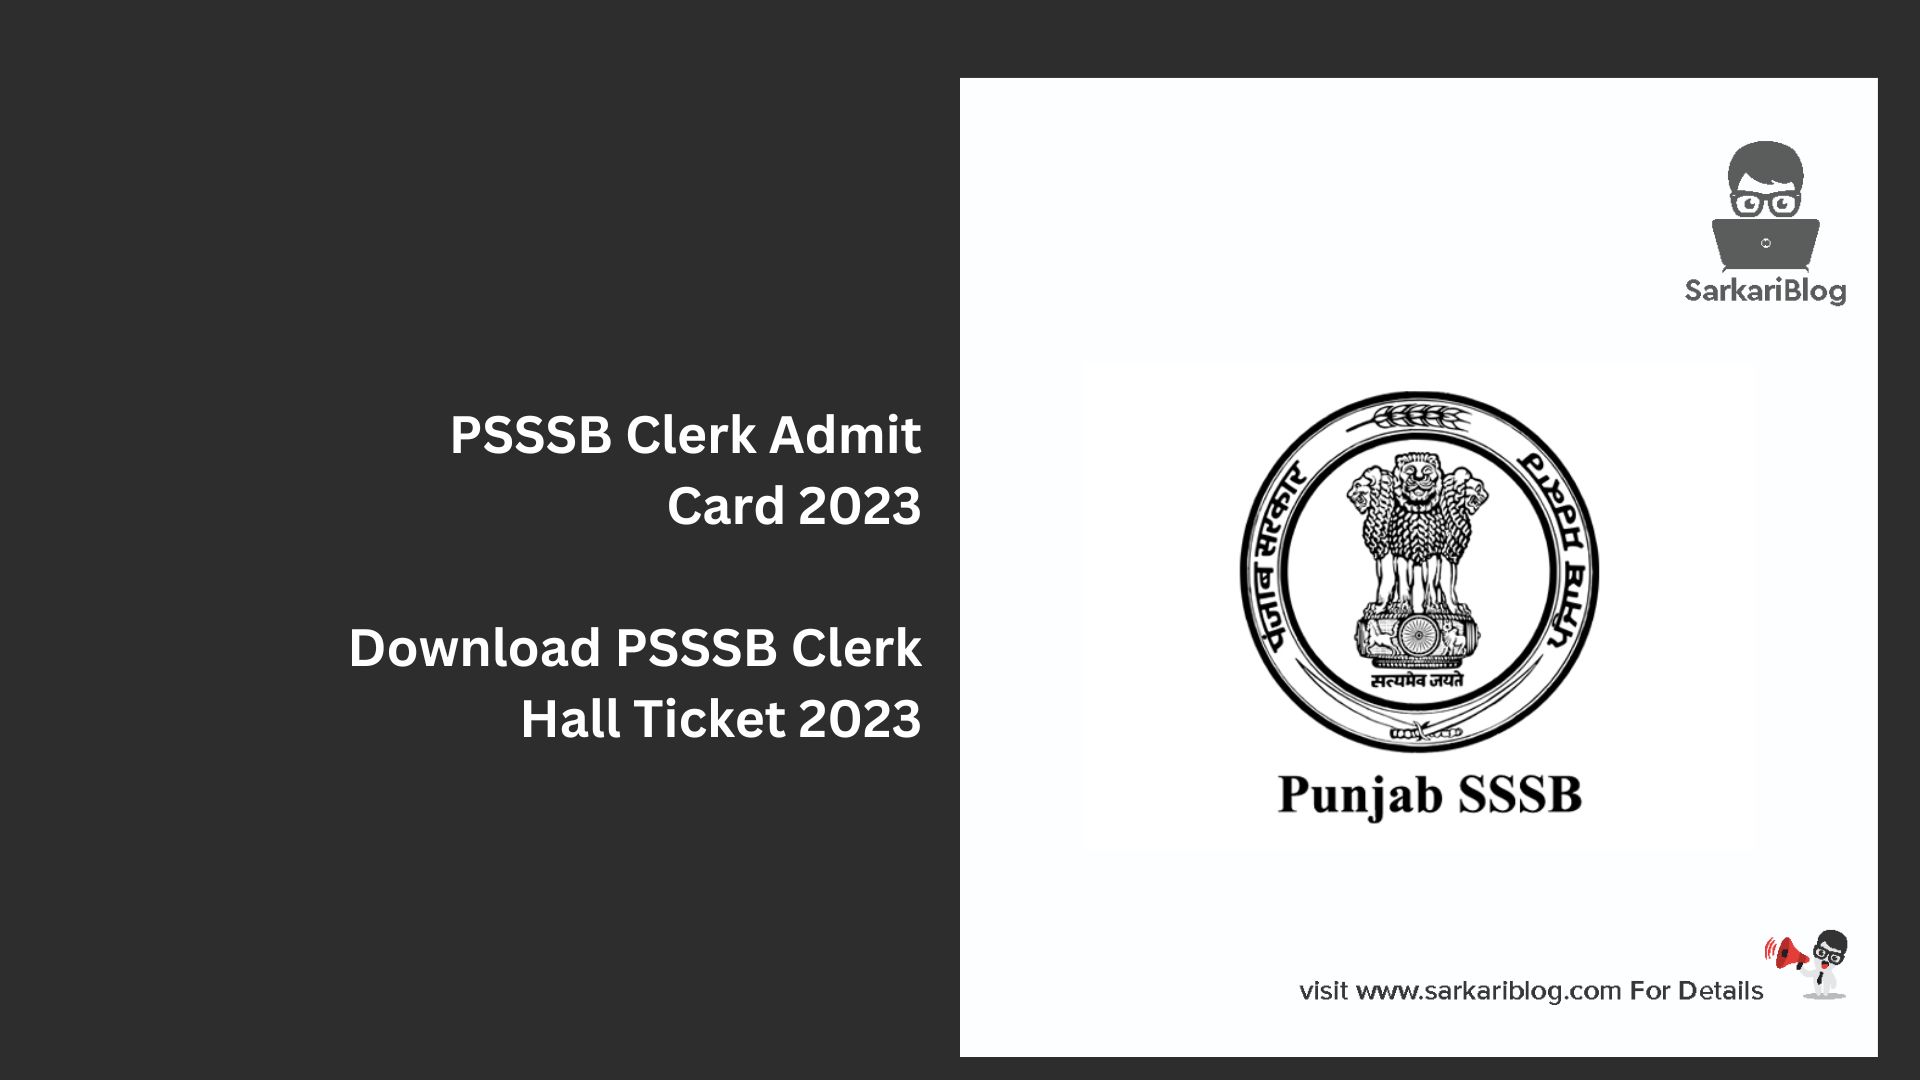 PSSSB Clerk Admit Card 2023